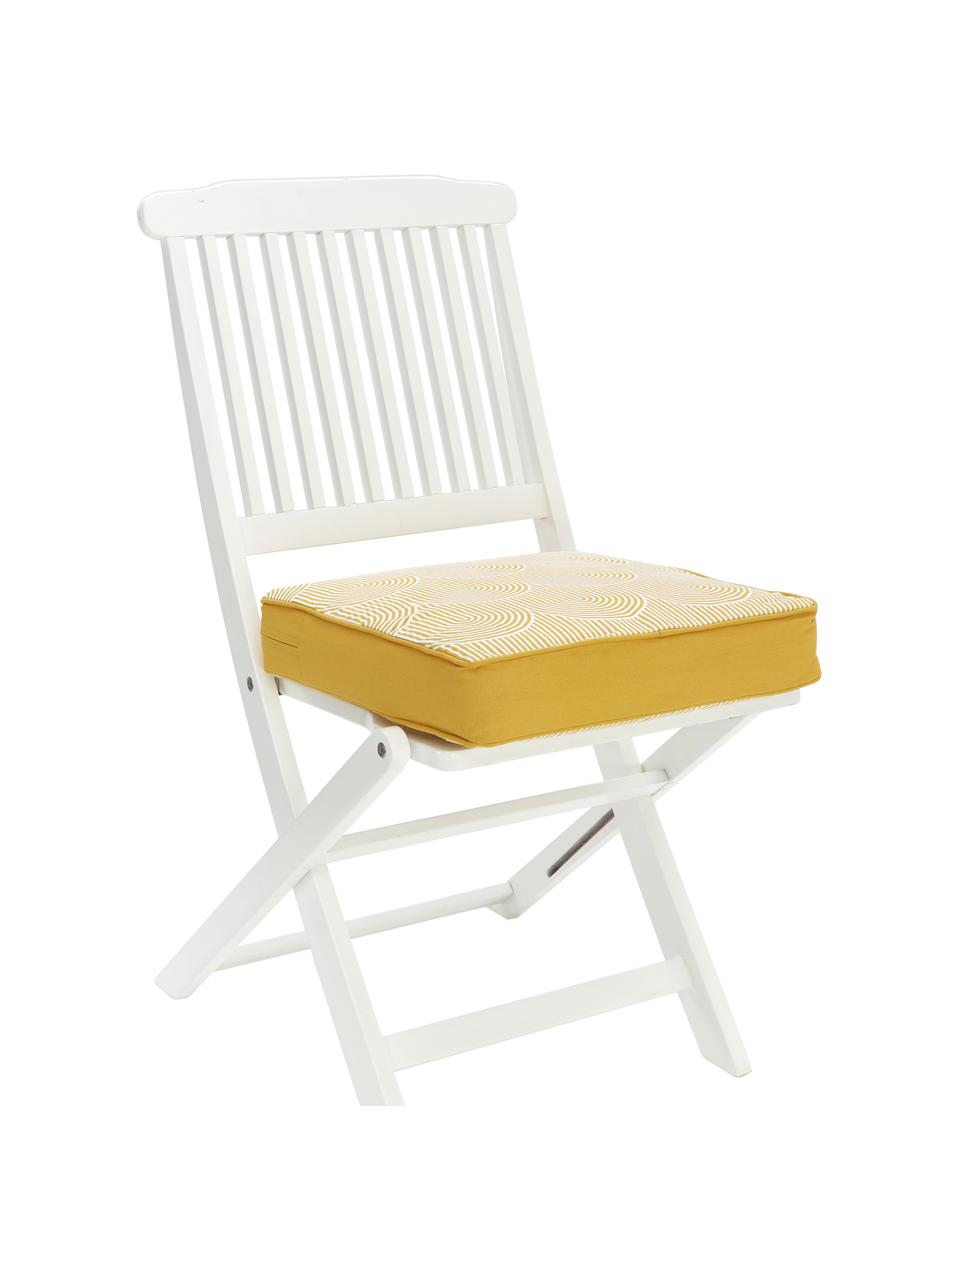 Hohes Sitzkissen Arc in Gelb/Weiß, Bezug: 100% Baumwolle, Gelb, 40 x 40 cm